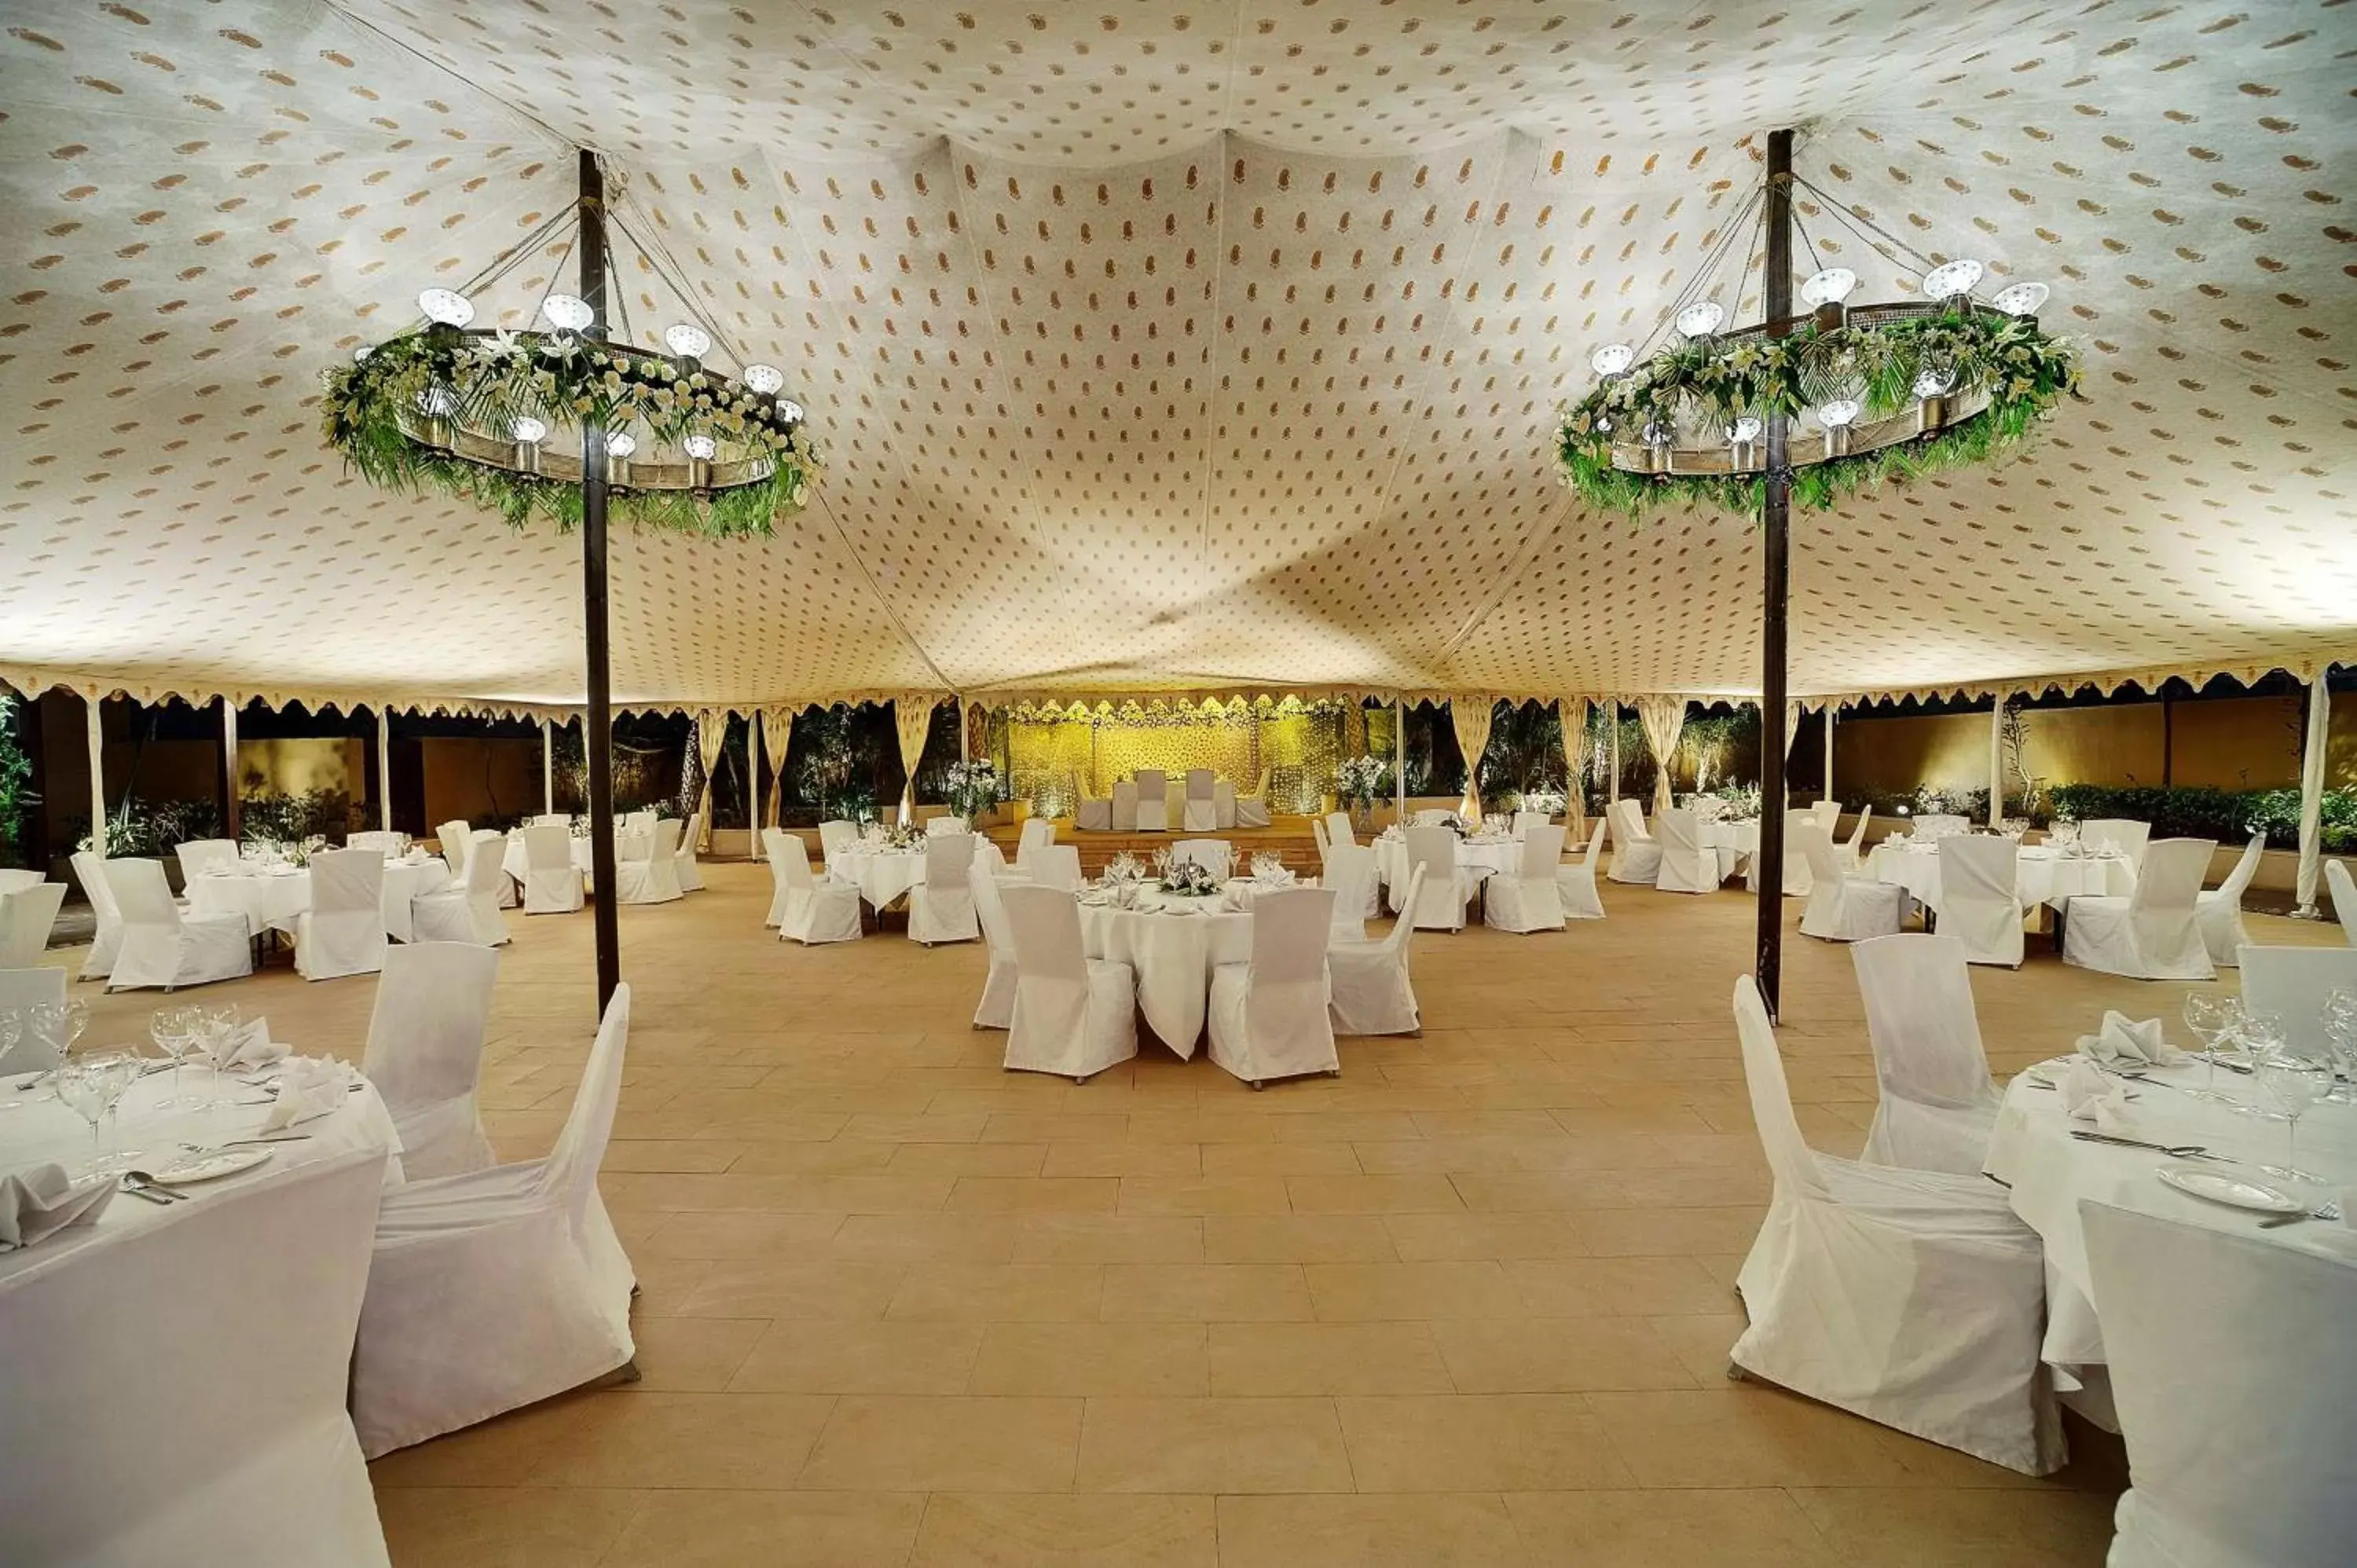 Meeting/conference room, Banquet Facilities in Hyatt Regency Amritsar